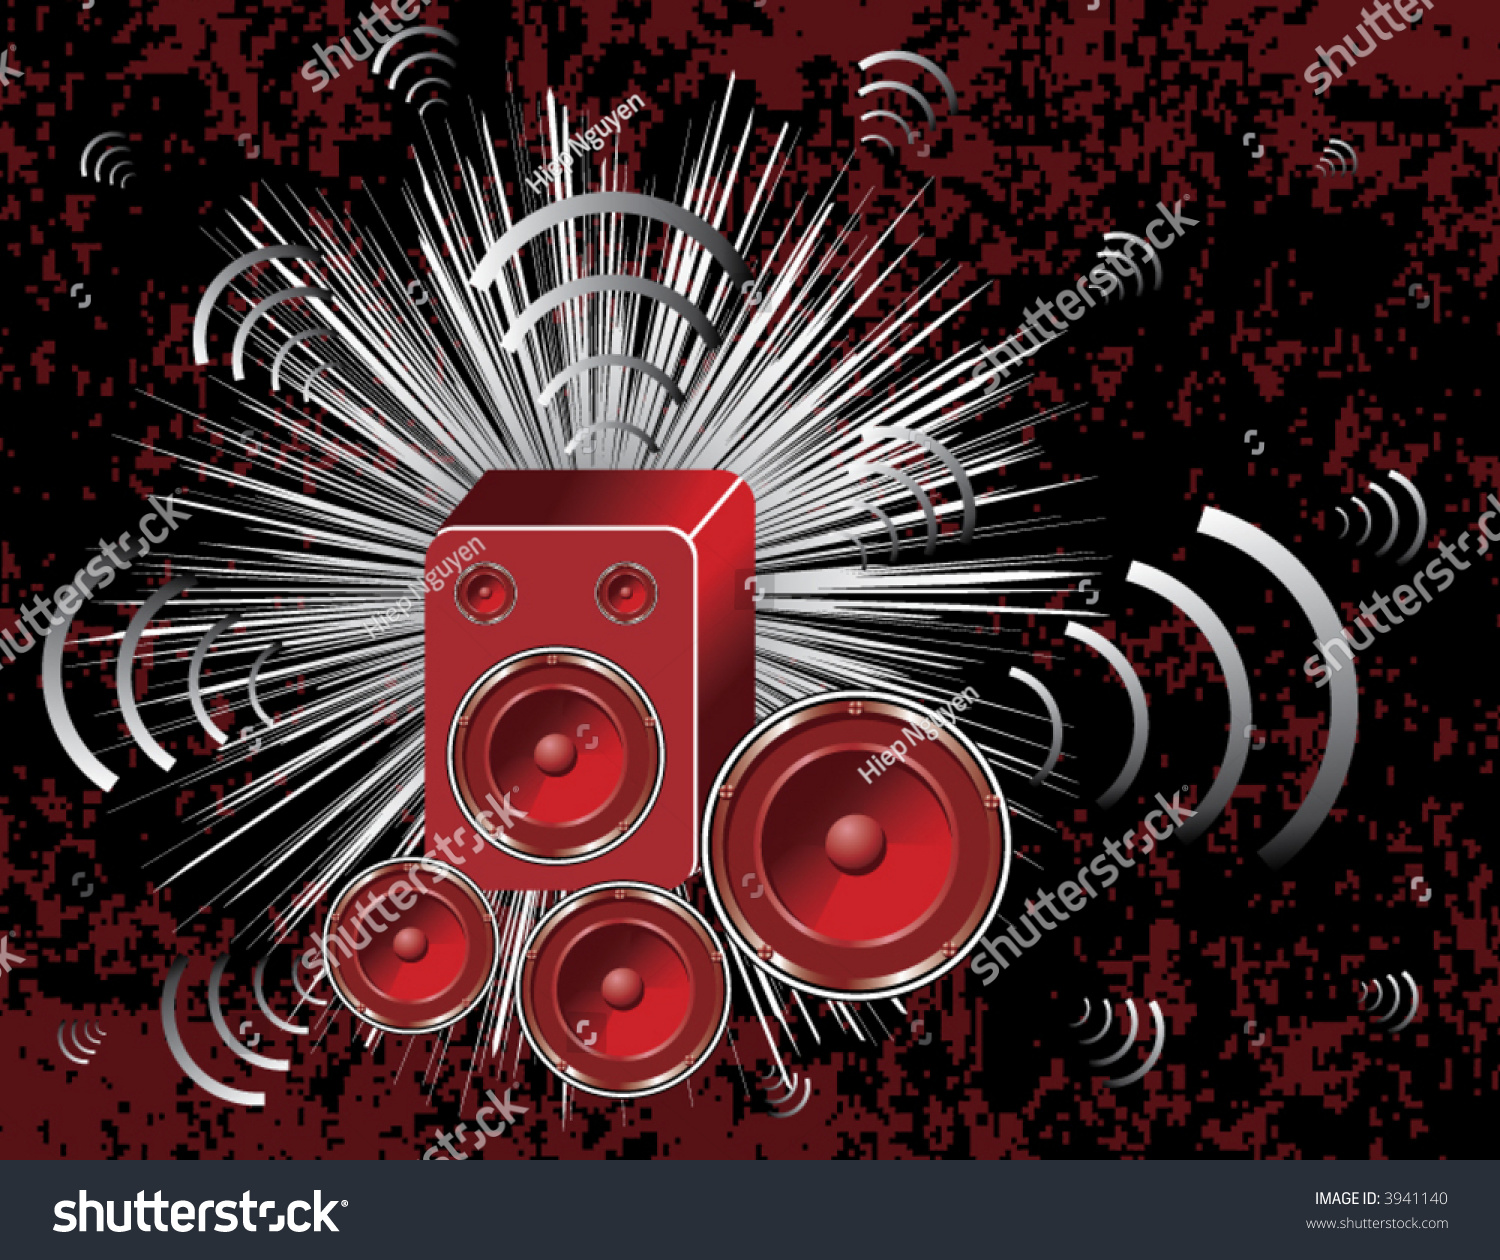 Speaker Vector - 3941140 : Shutterstock